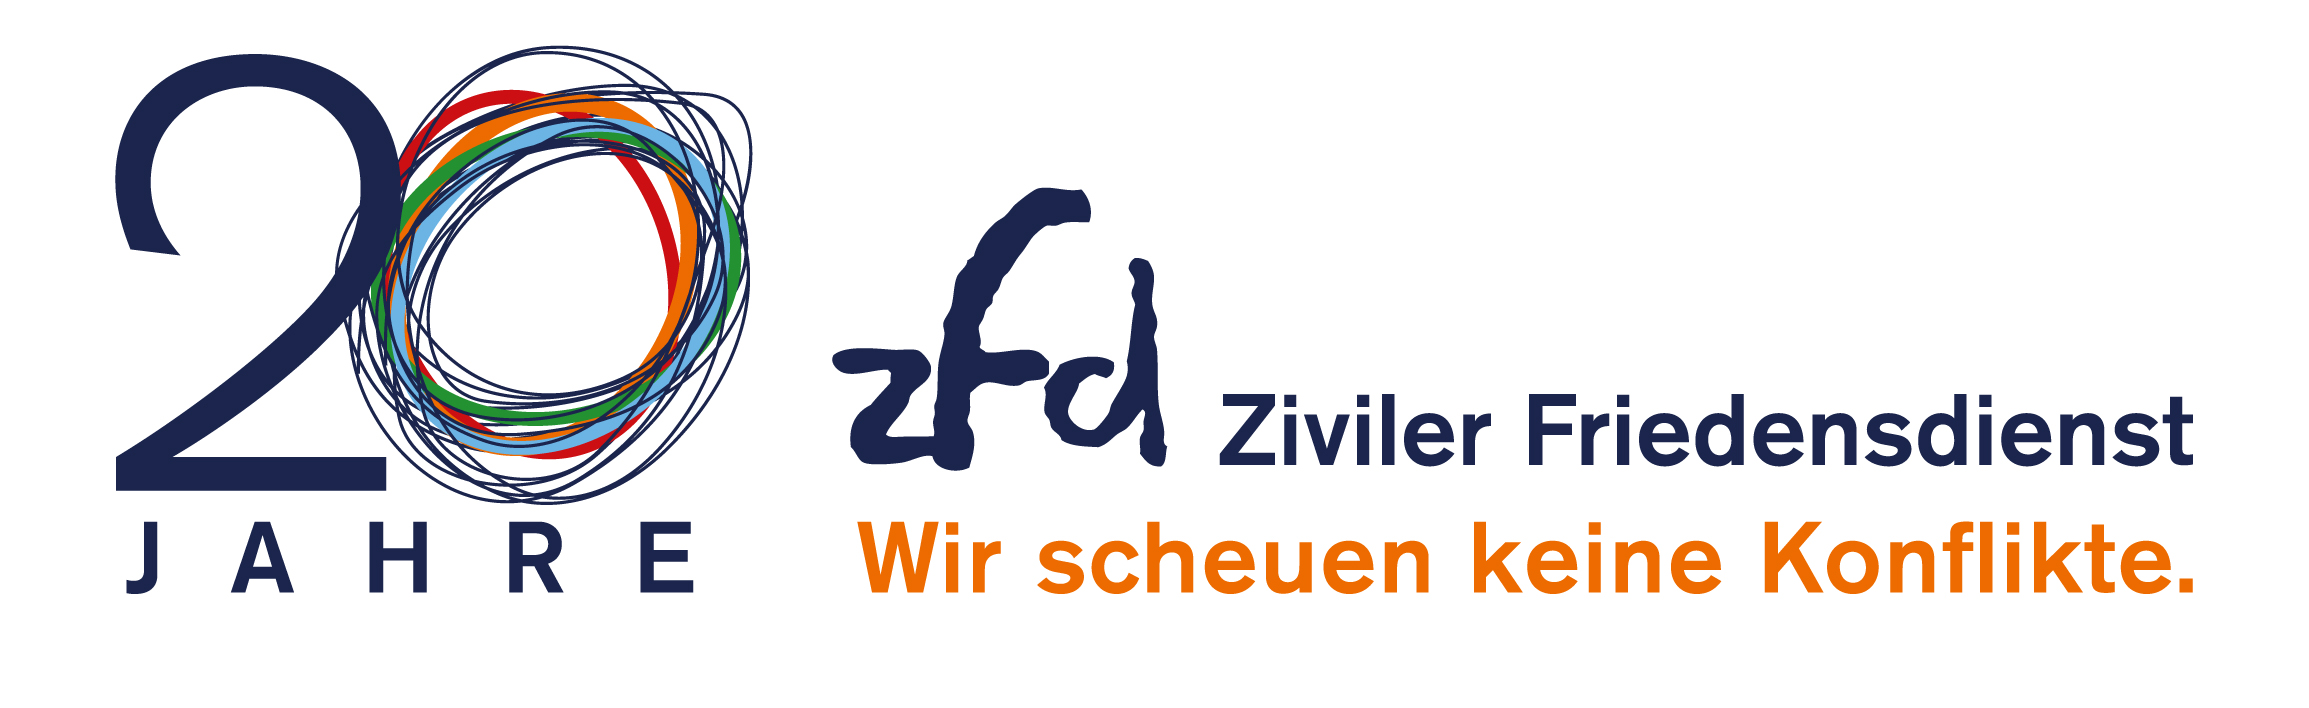 Ziviler Friedensdienst_zfd_Jubiliaeums-Logo_20 Jahre